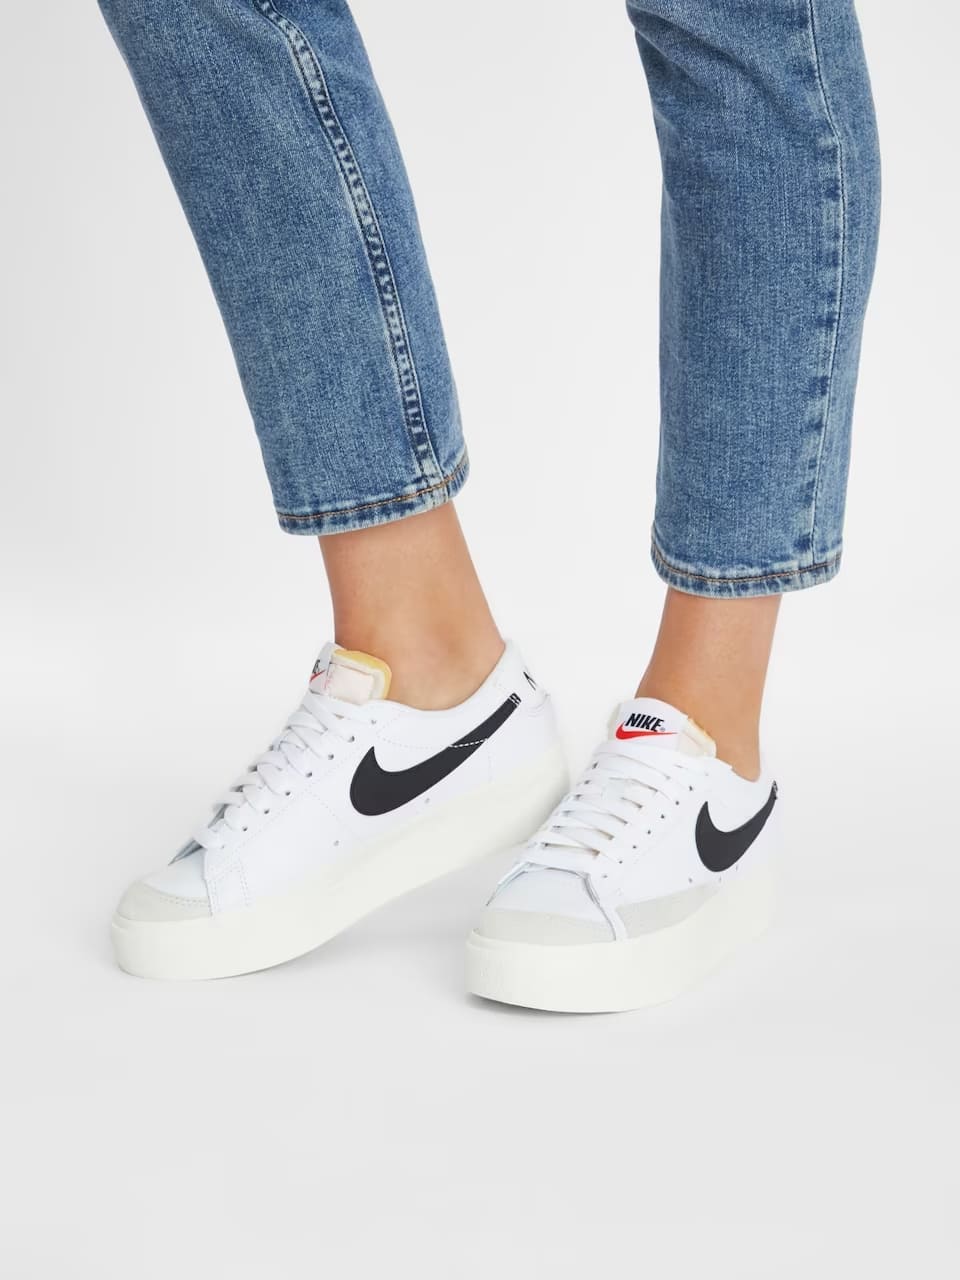 Nike Blazer Low Platform DJ0292-101 weiss on Feet